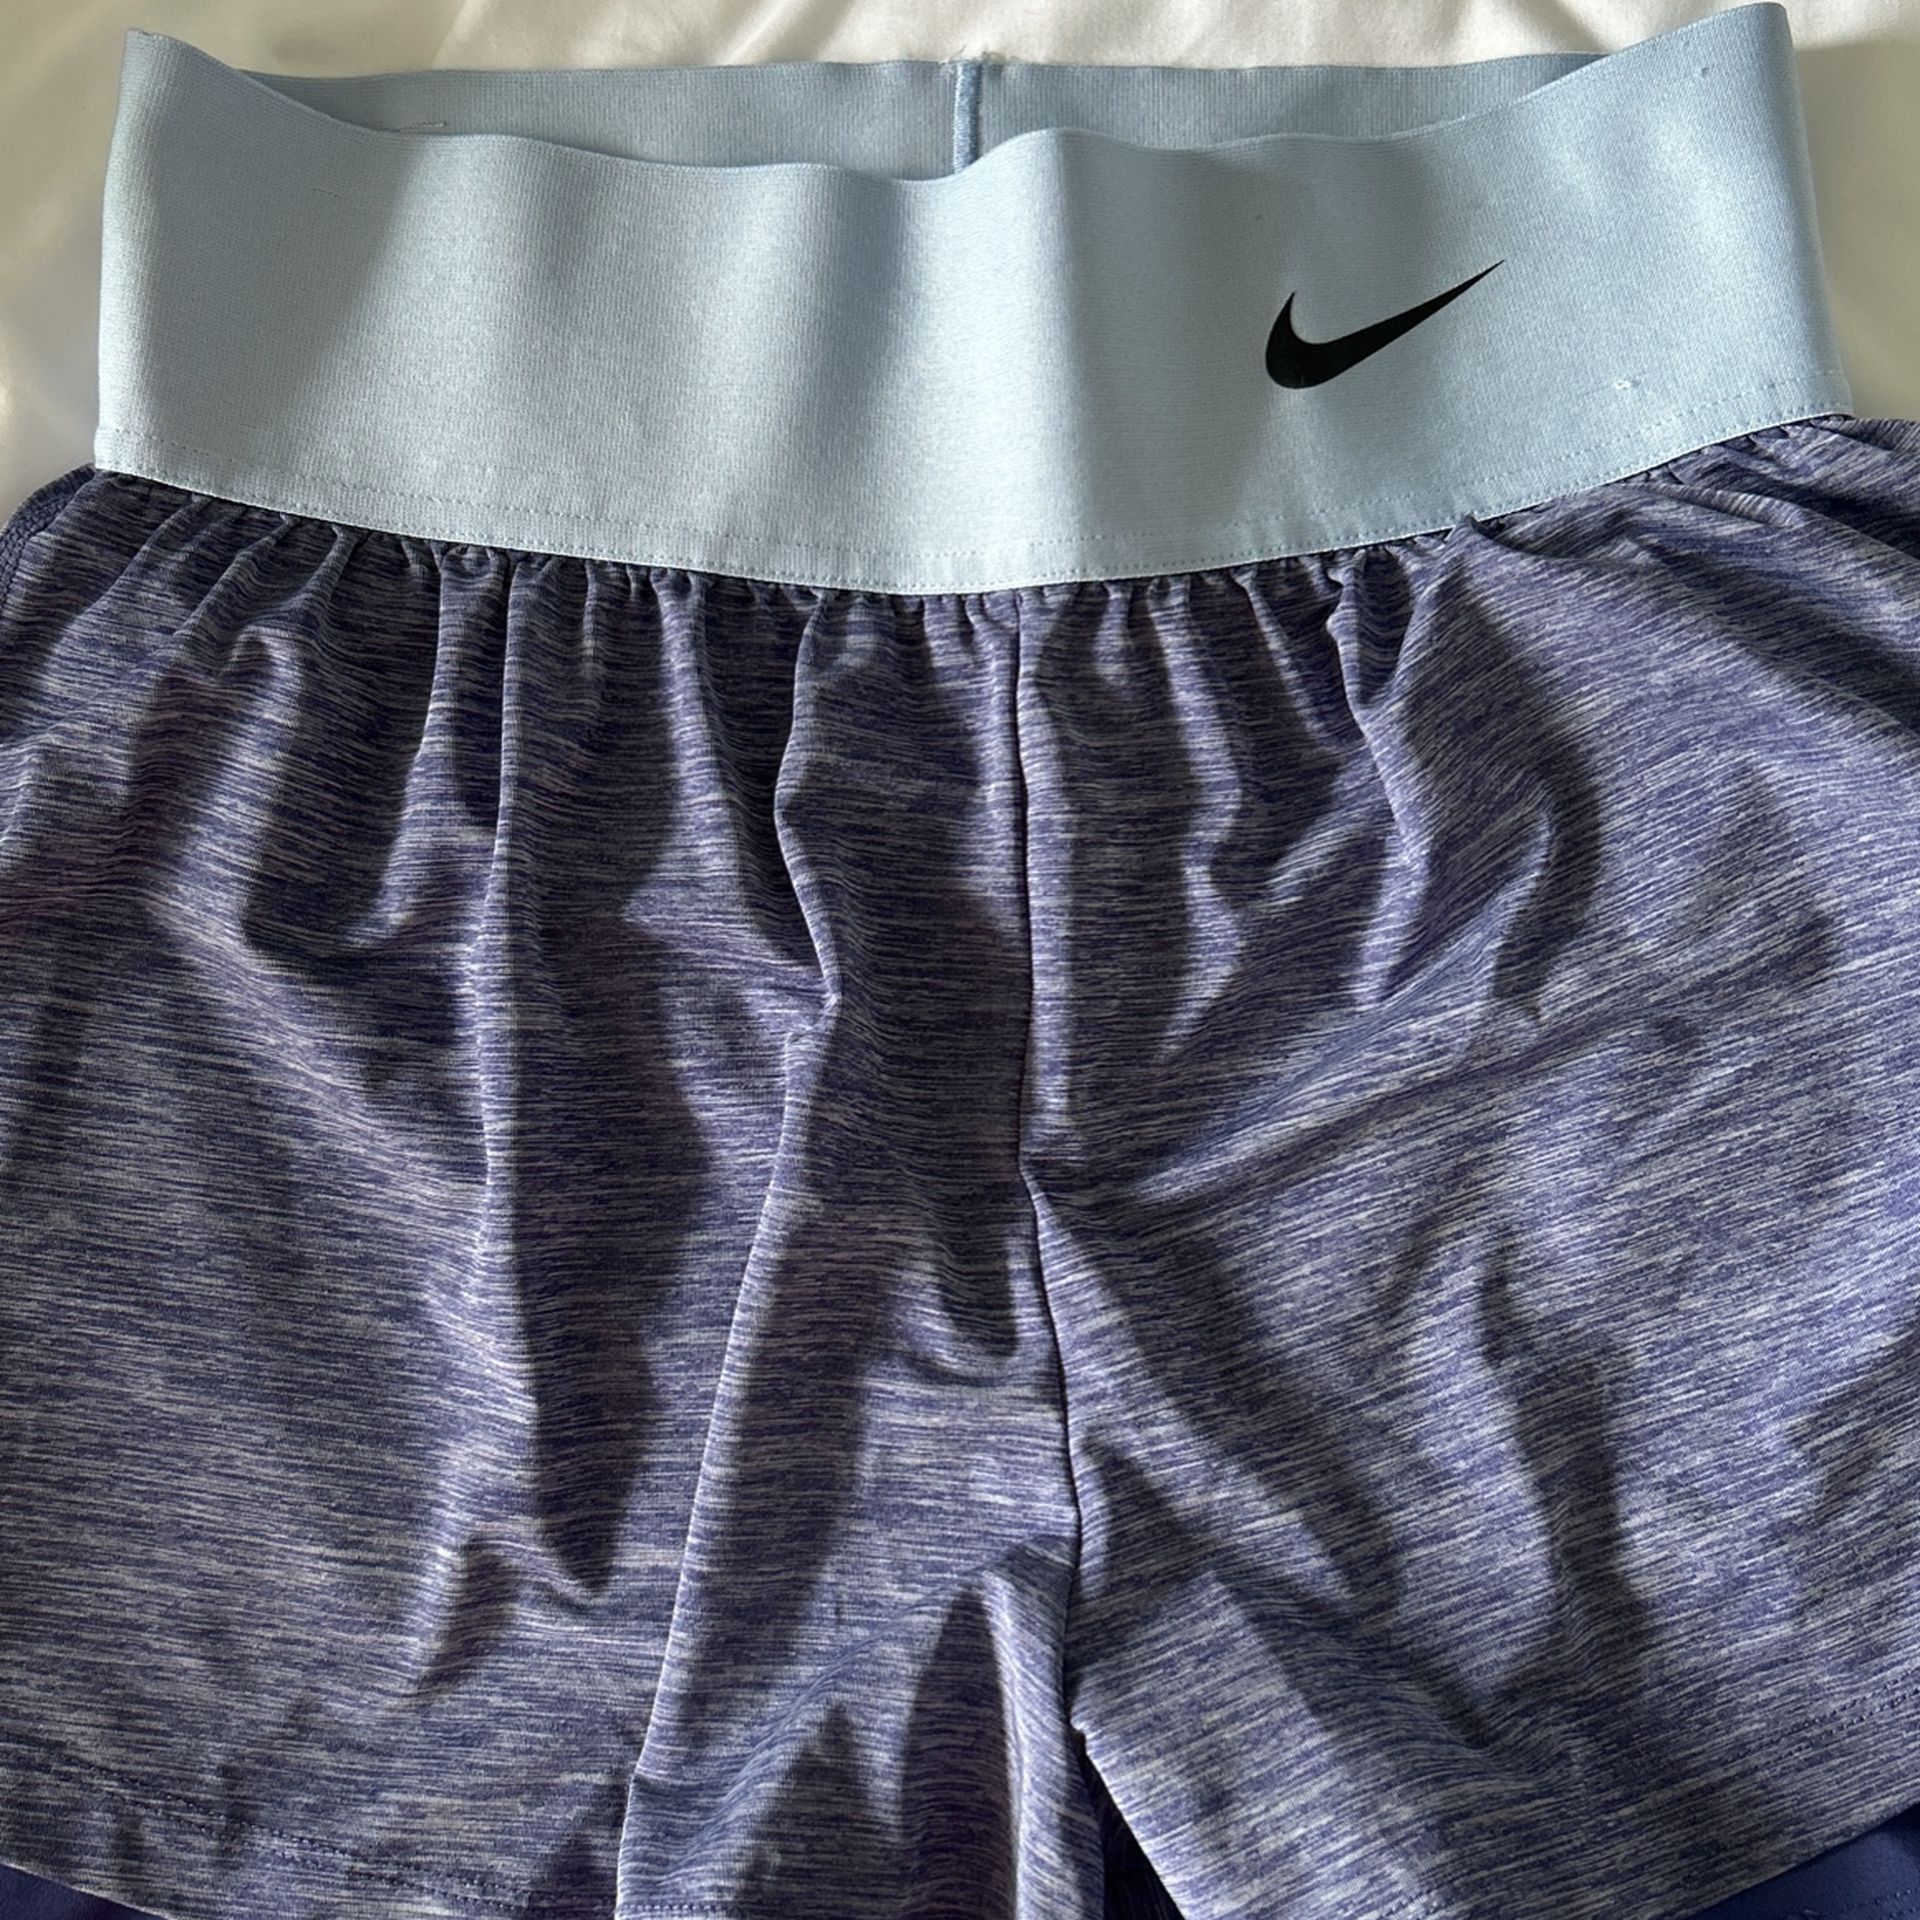 Nike Women’s Shorts